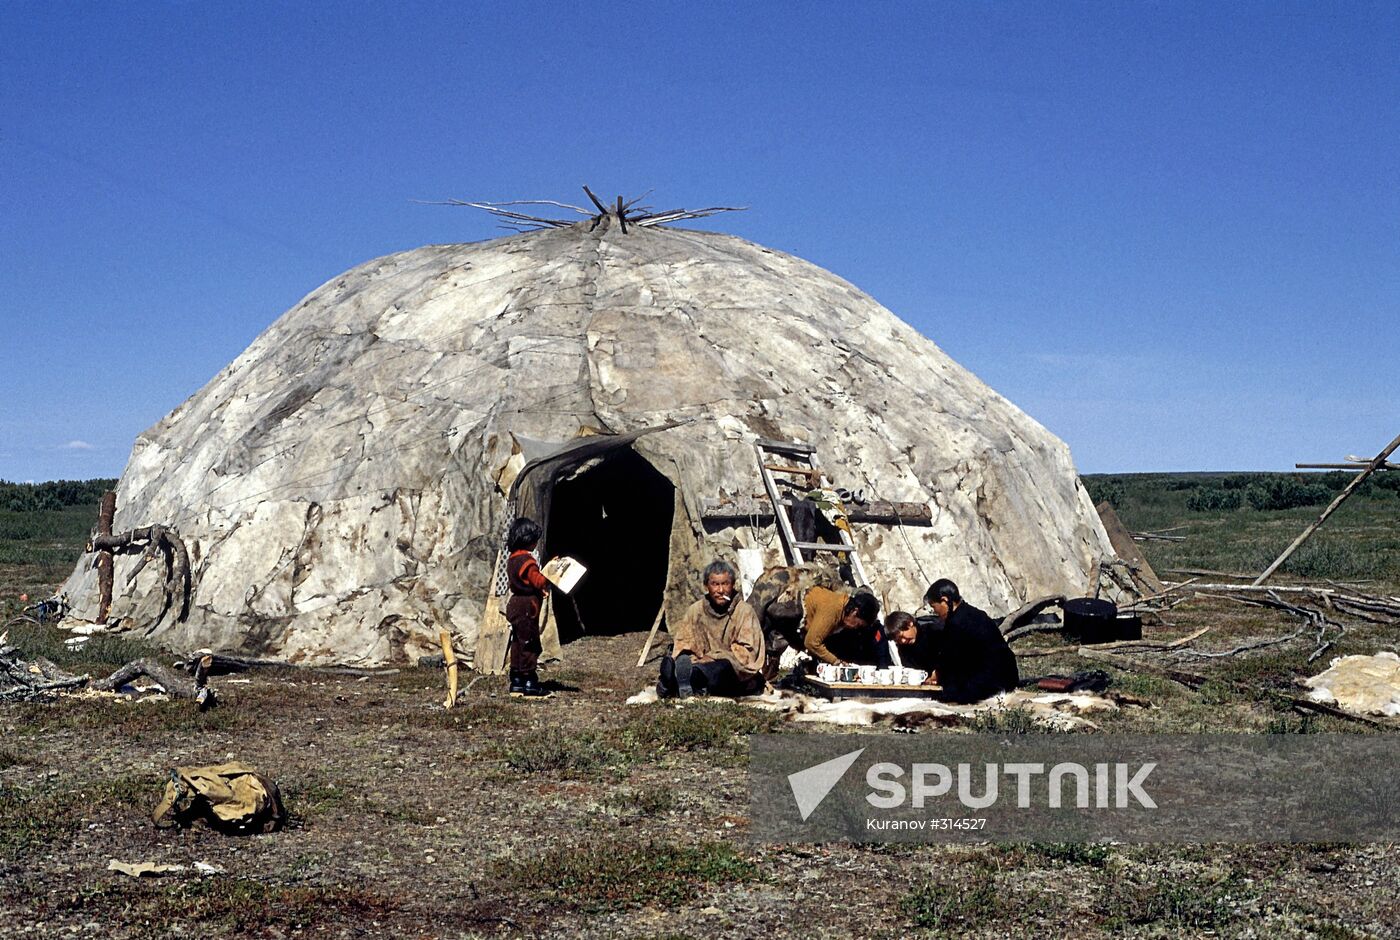 Chukchi yaranga (traditional mobile home)